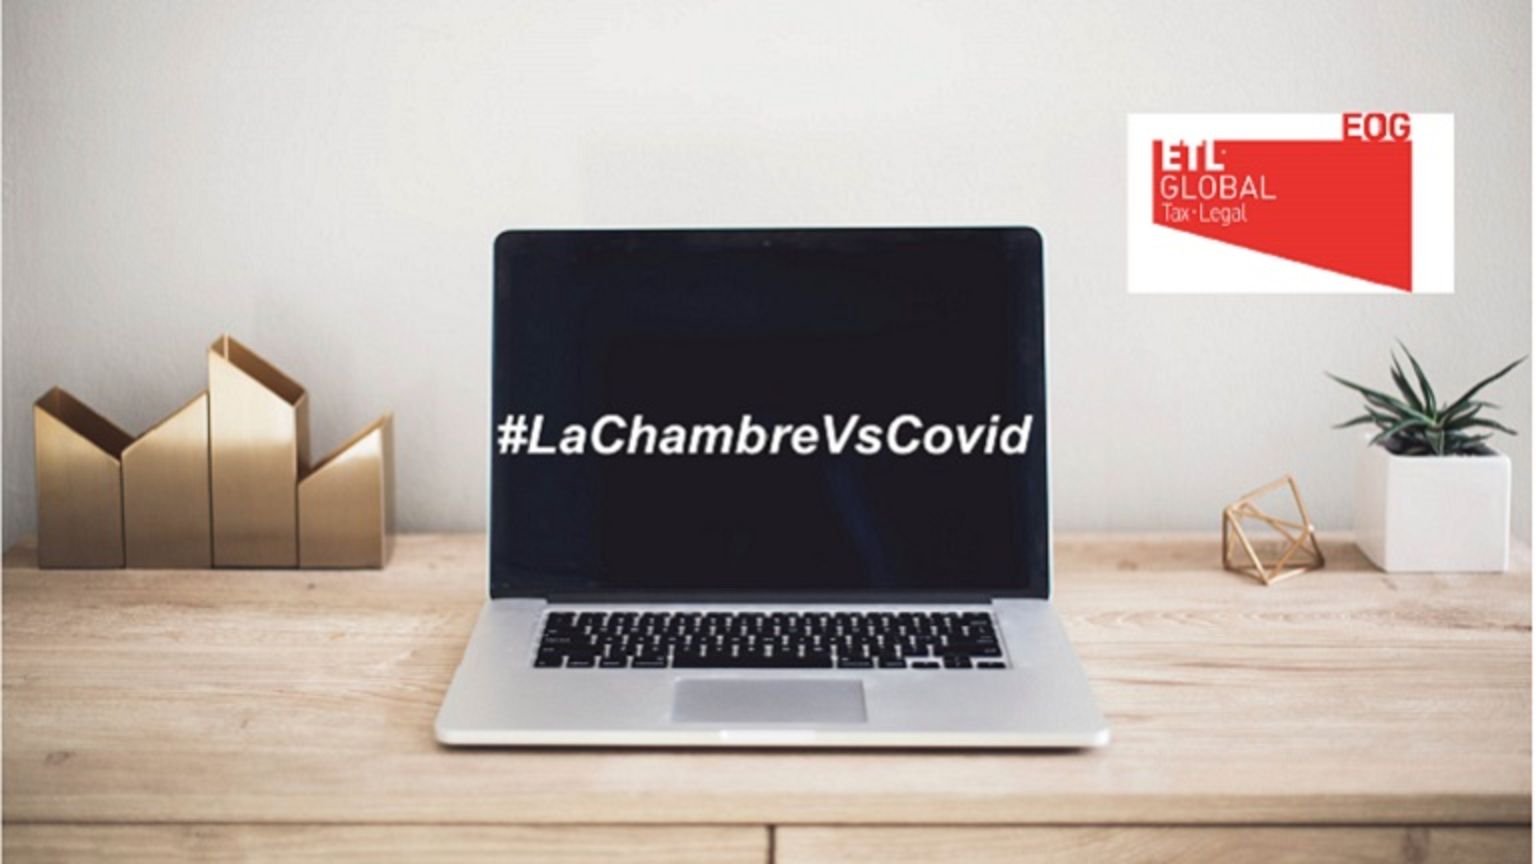 #WebinarsLaChambre - Prácticas anticompetitivas en el escenario actual. Riesgo económico y reputacional -16.00